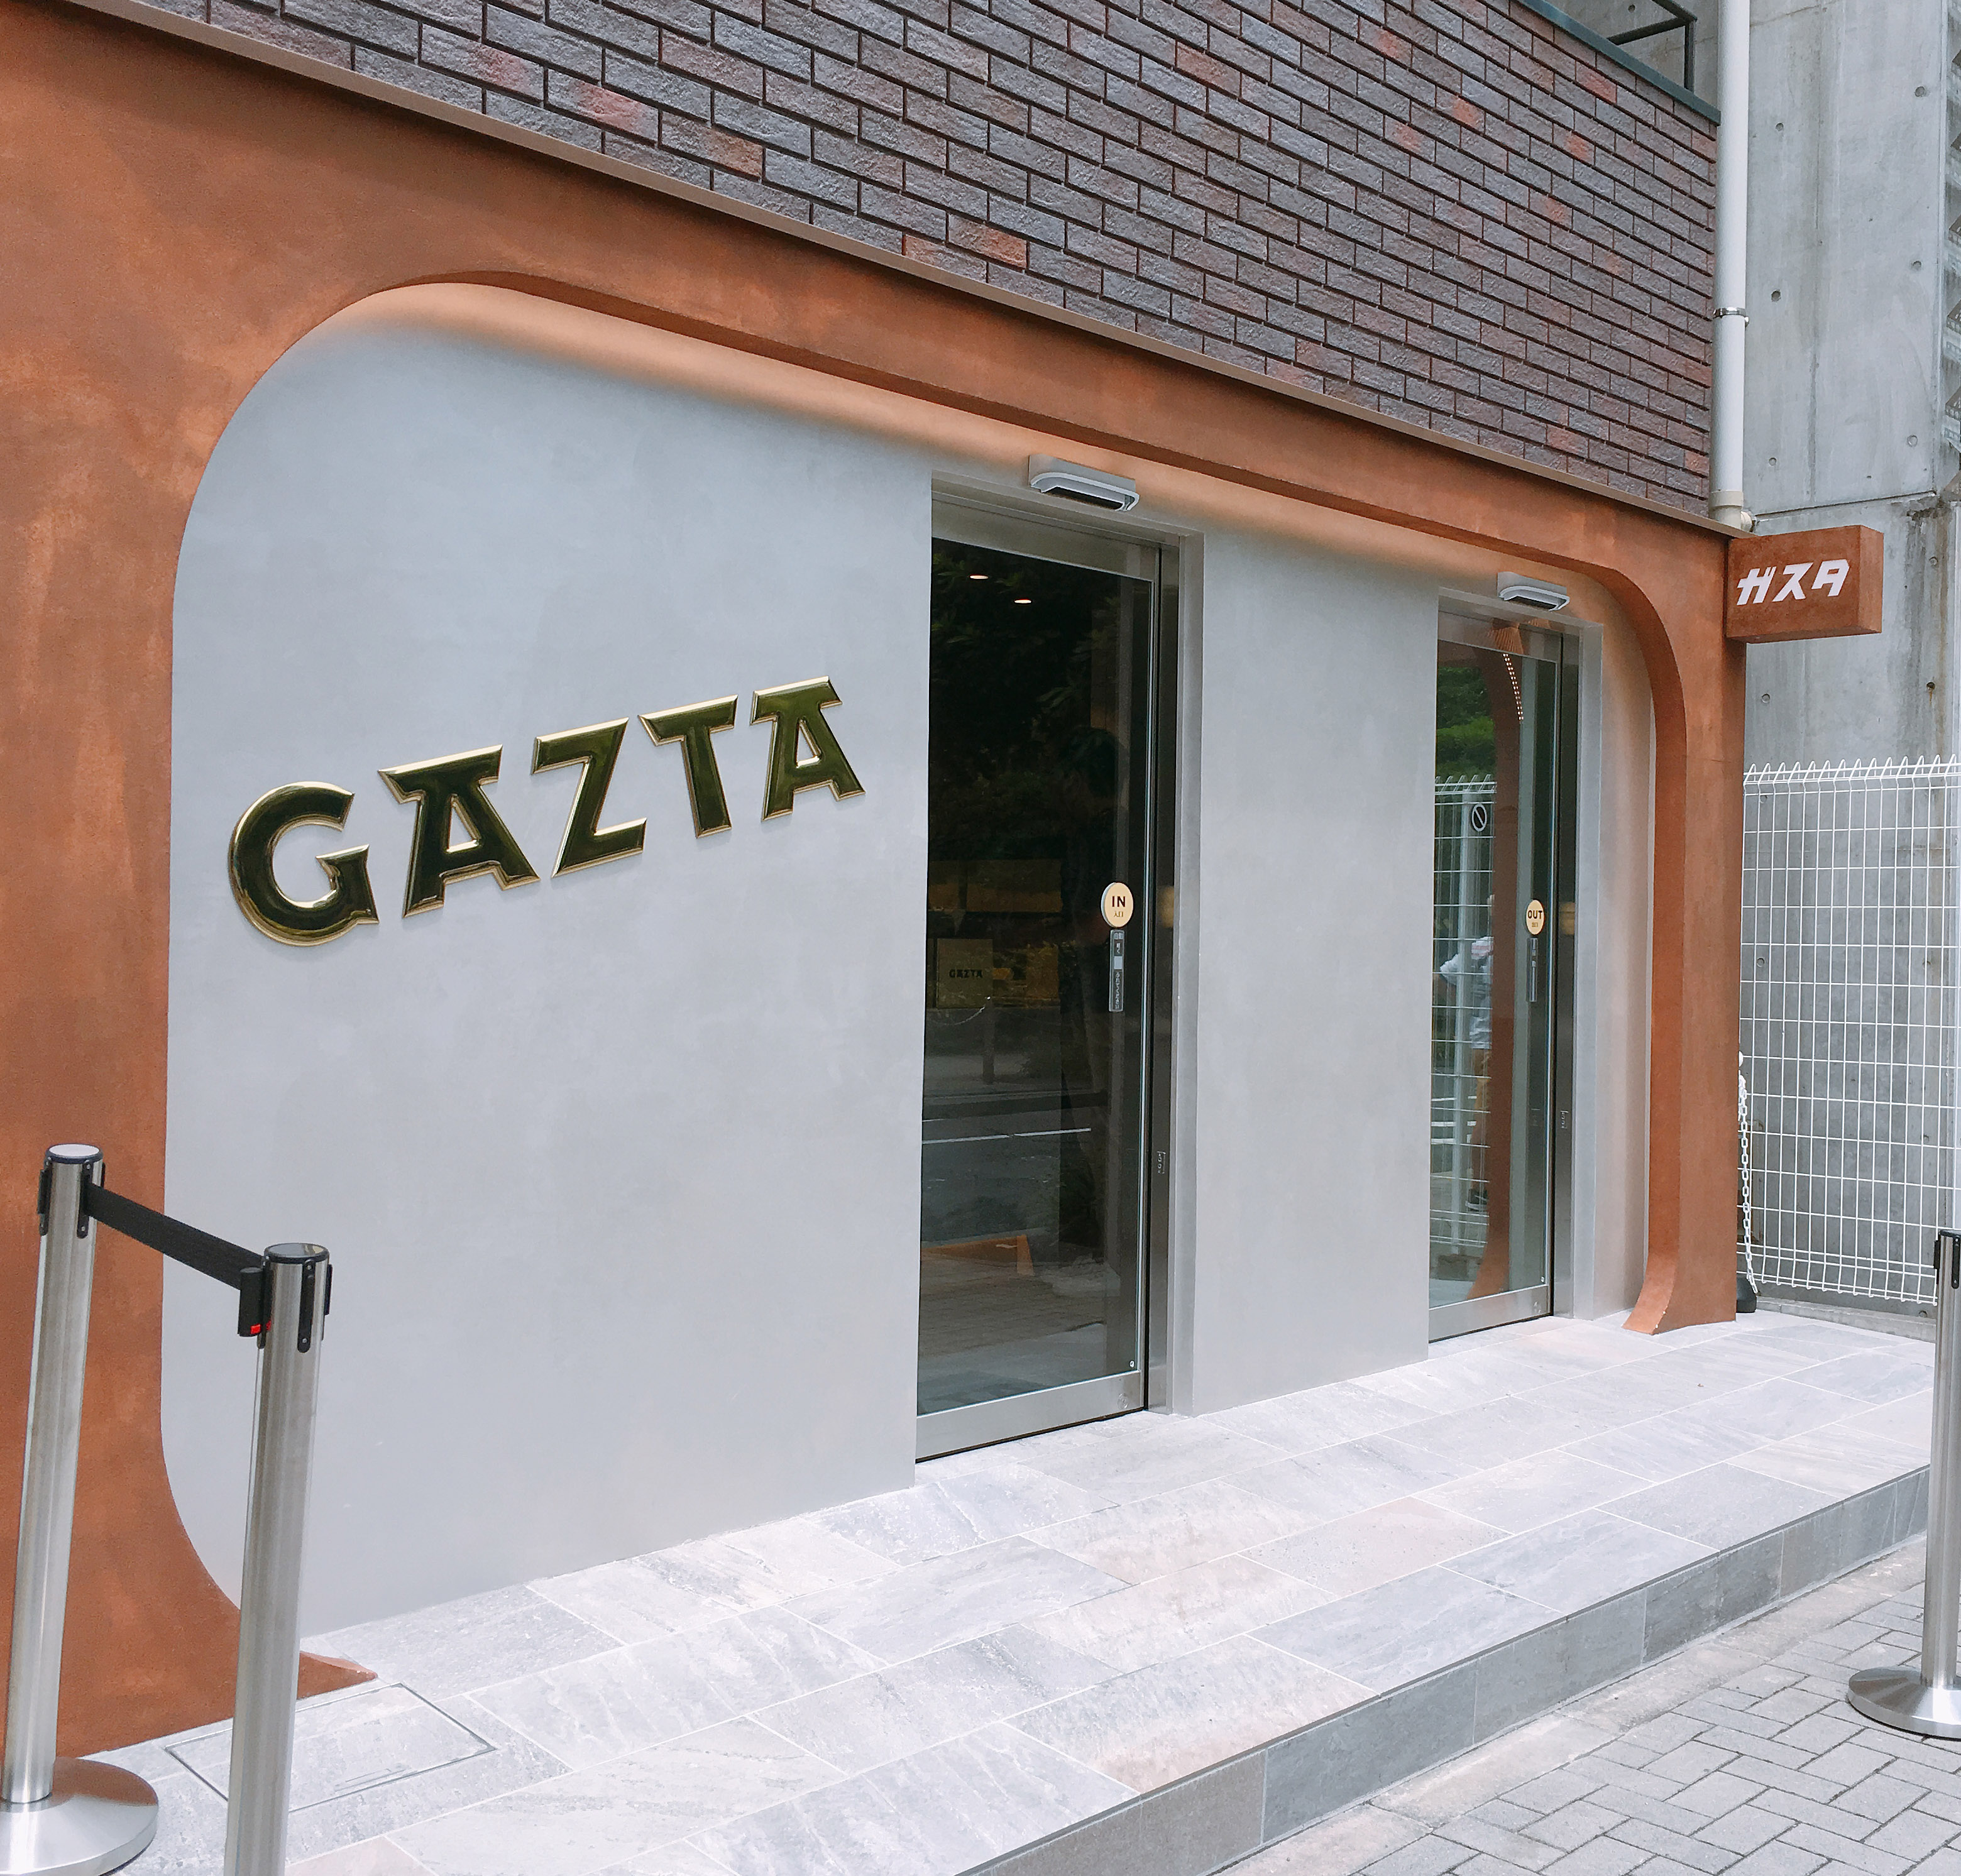 開店から1カ月も経たずにすでに人気店 Gazta のチーズケーキを食べてみた 東京 白金 ロケットニュース24